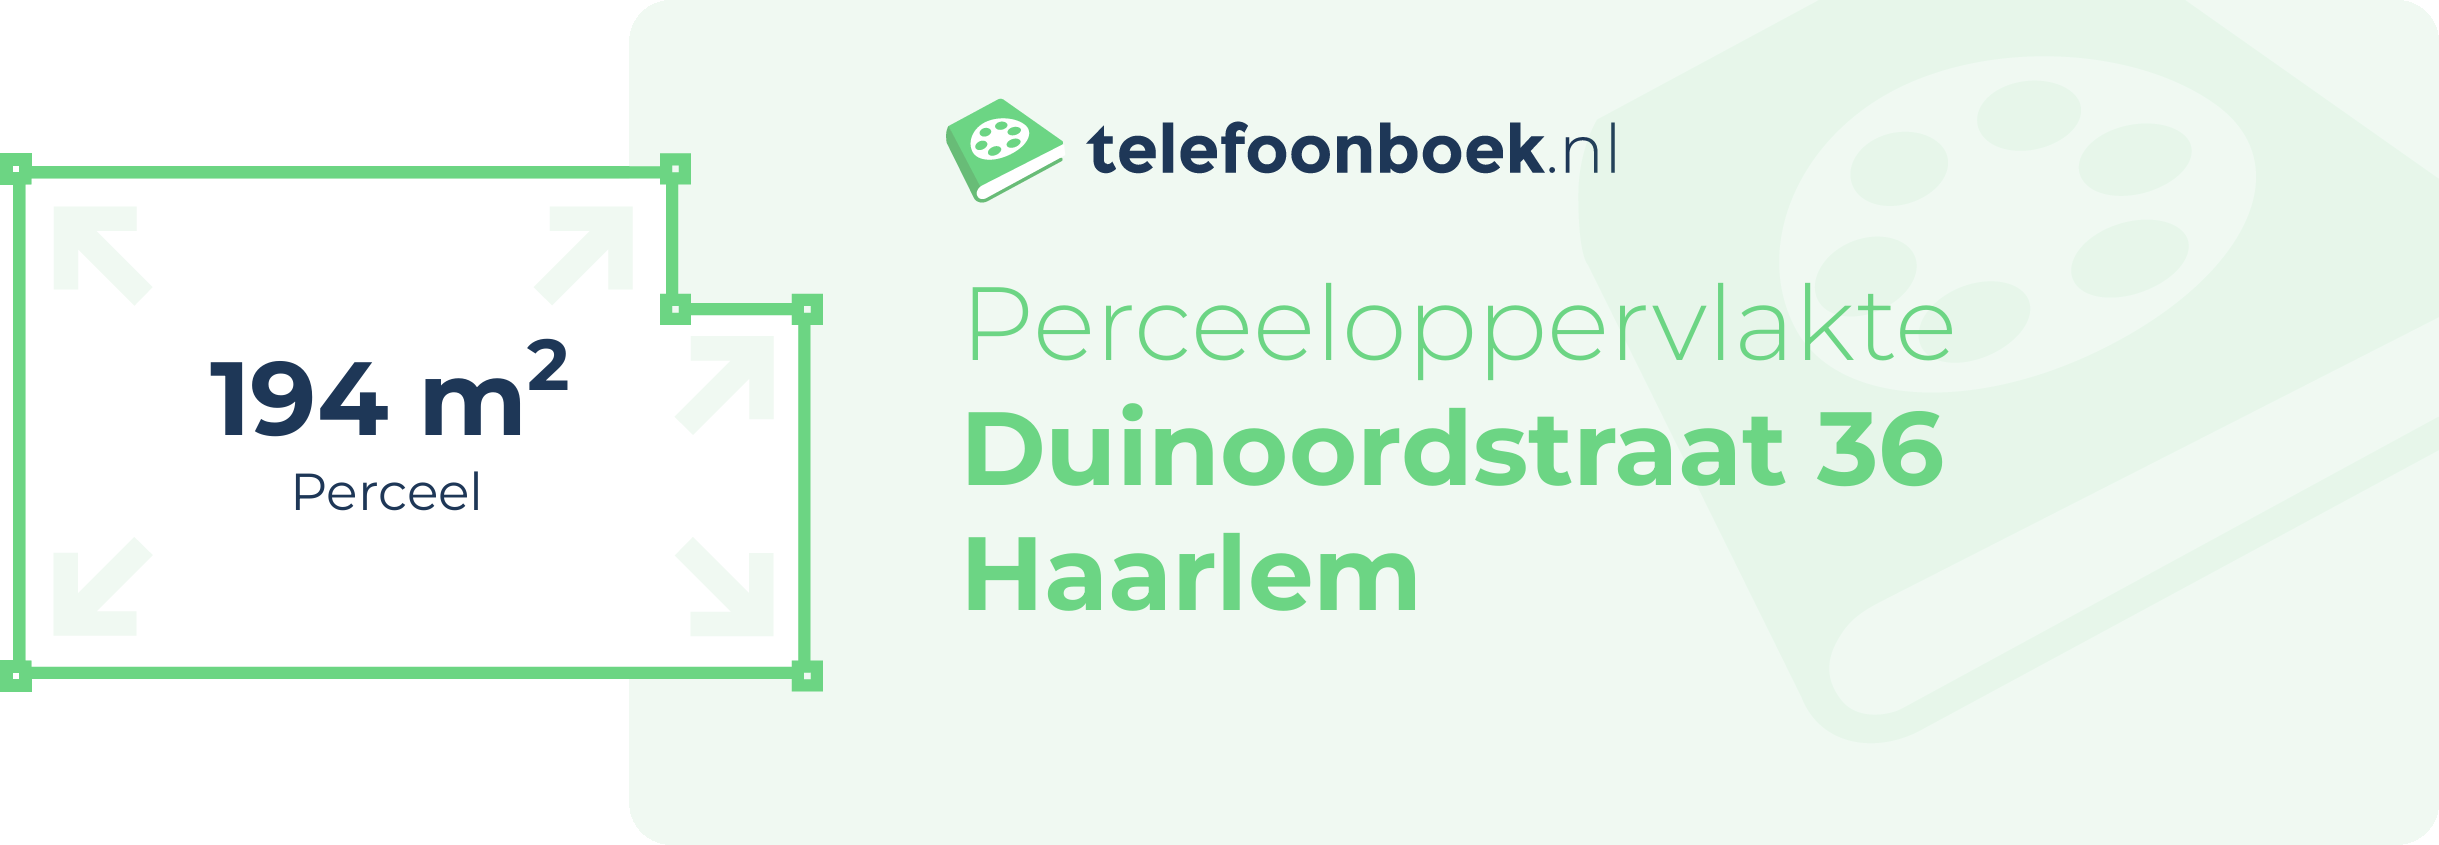 Perceeloppervlakte Duinoordstraat 36 Haarlem